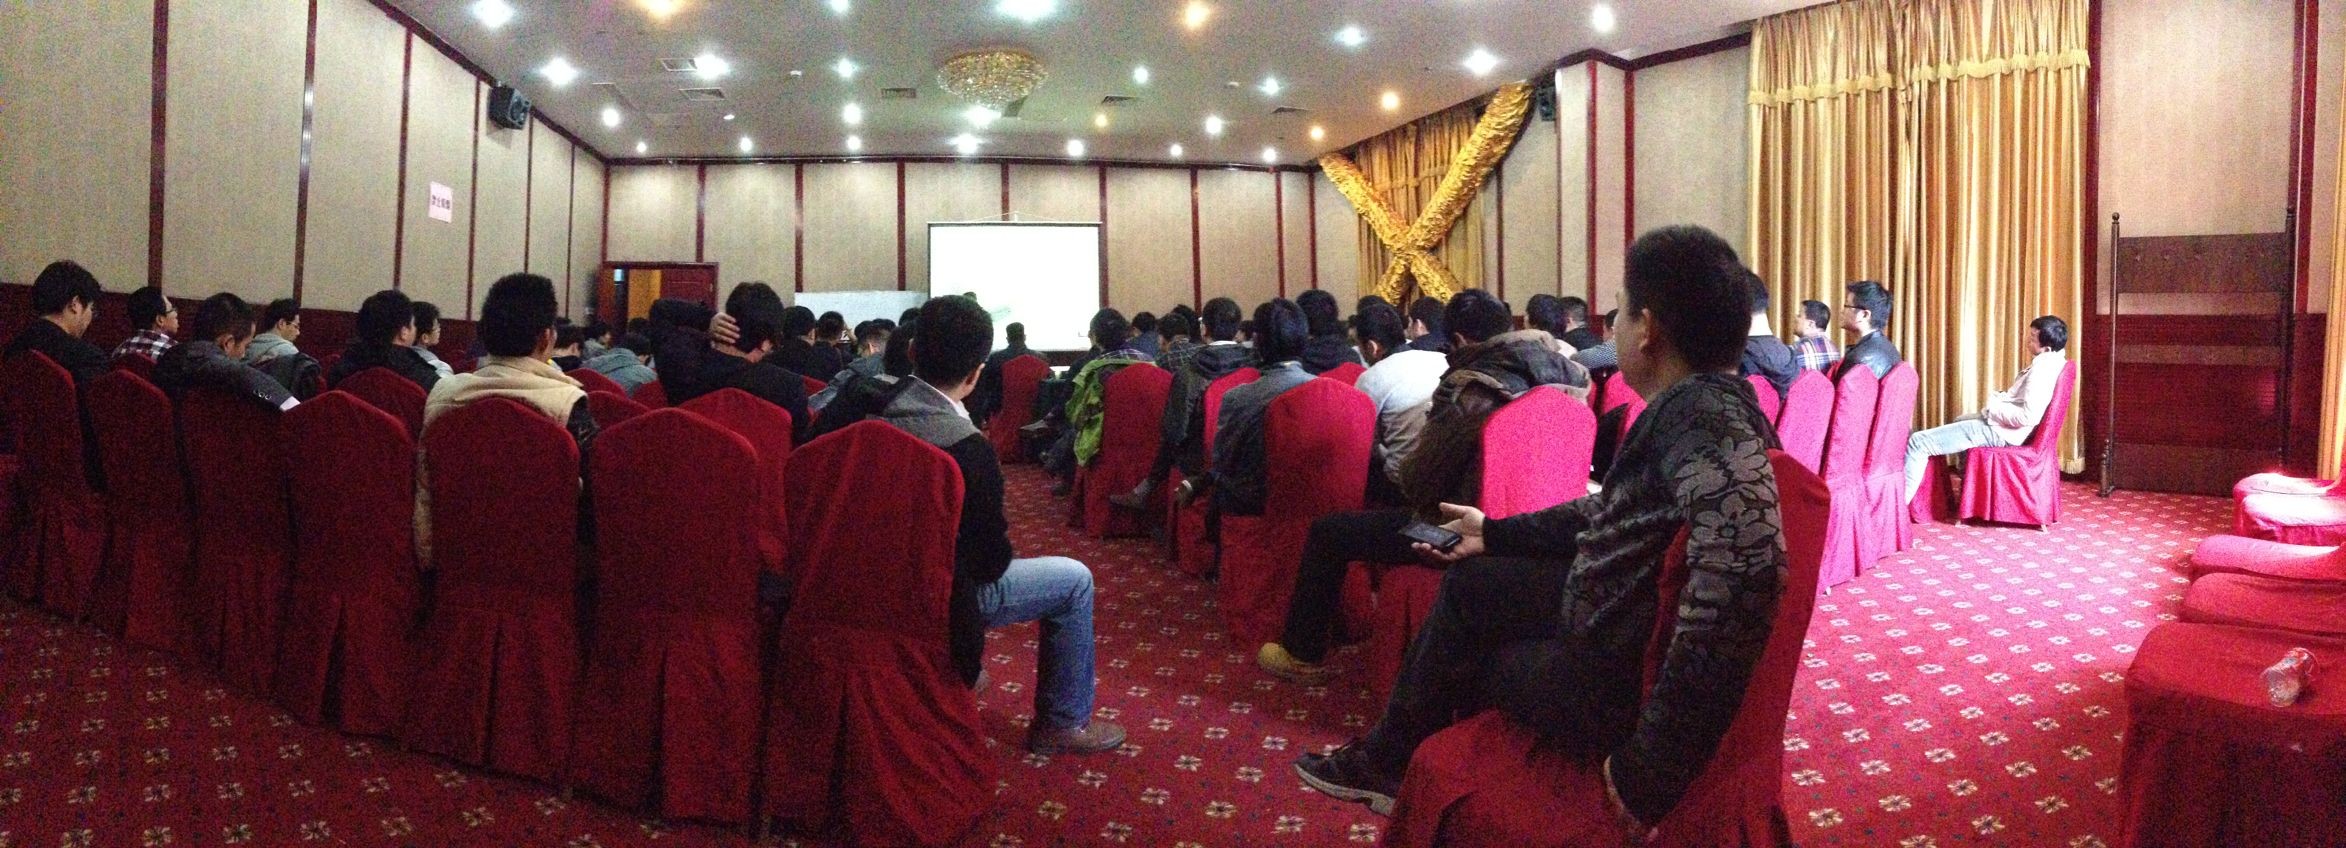 MRT teaching in Beijing, April 2013